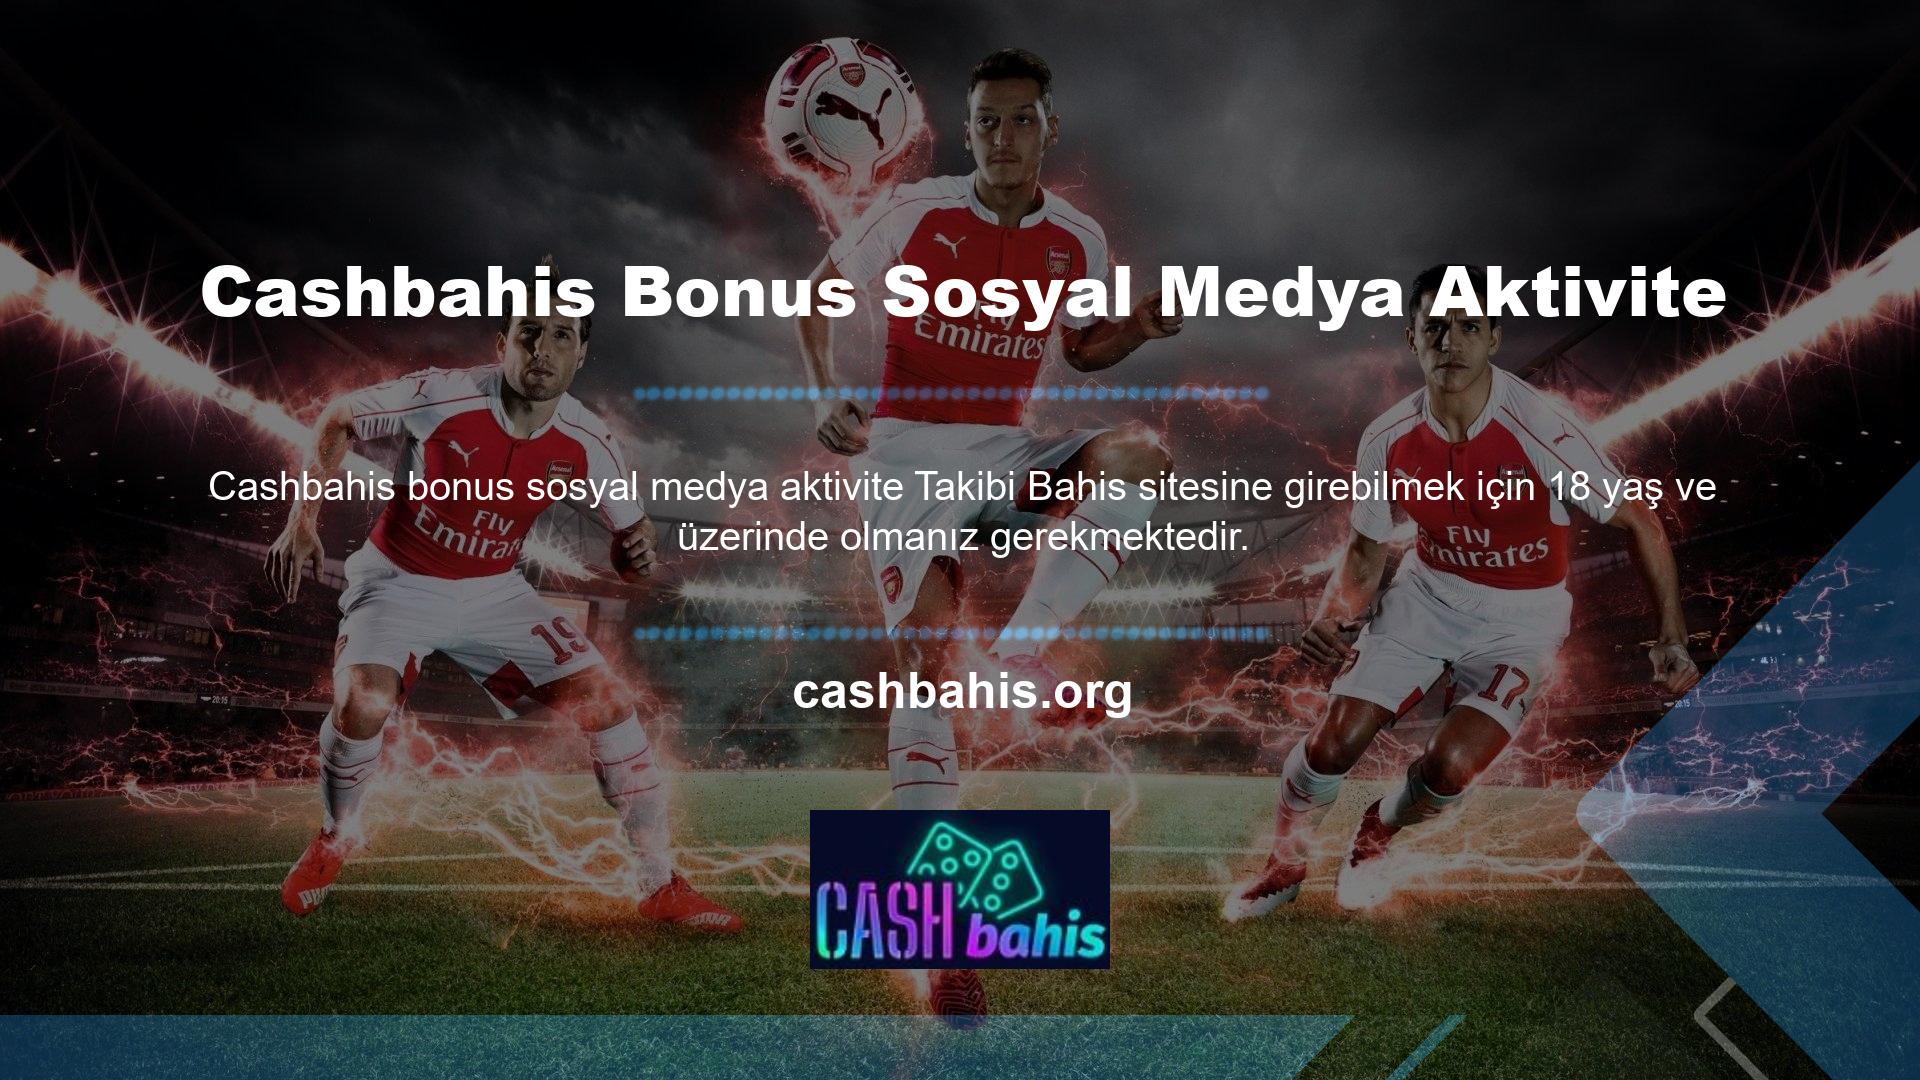 Site ayrıca sosyal medya üzerinden özel bonus etkinliklerini de duyuracaktır